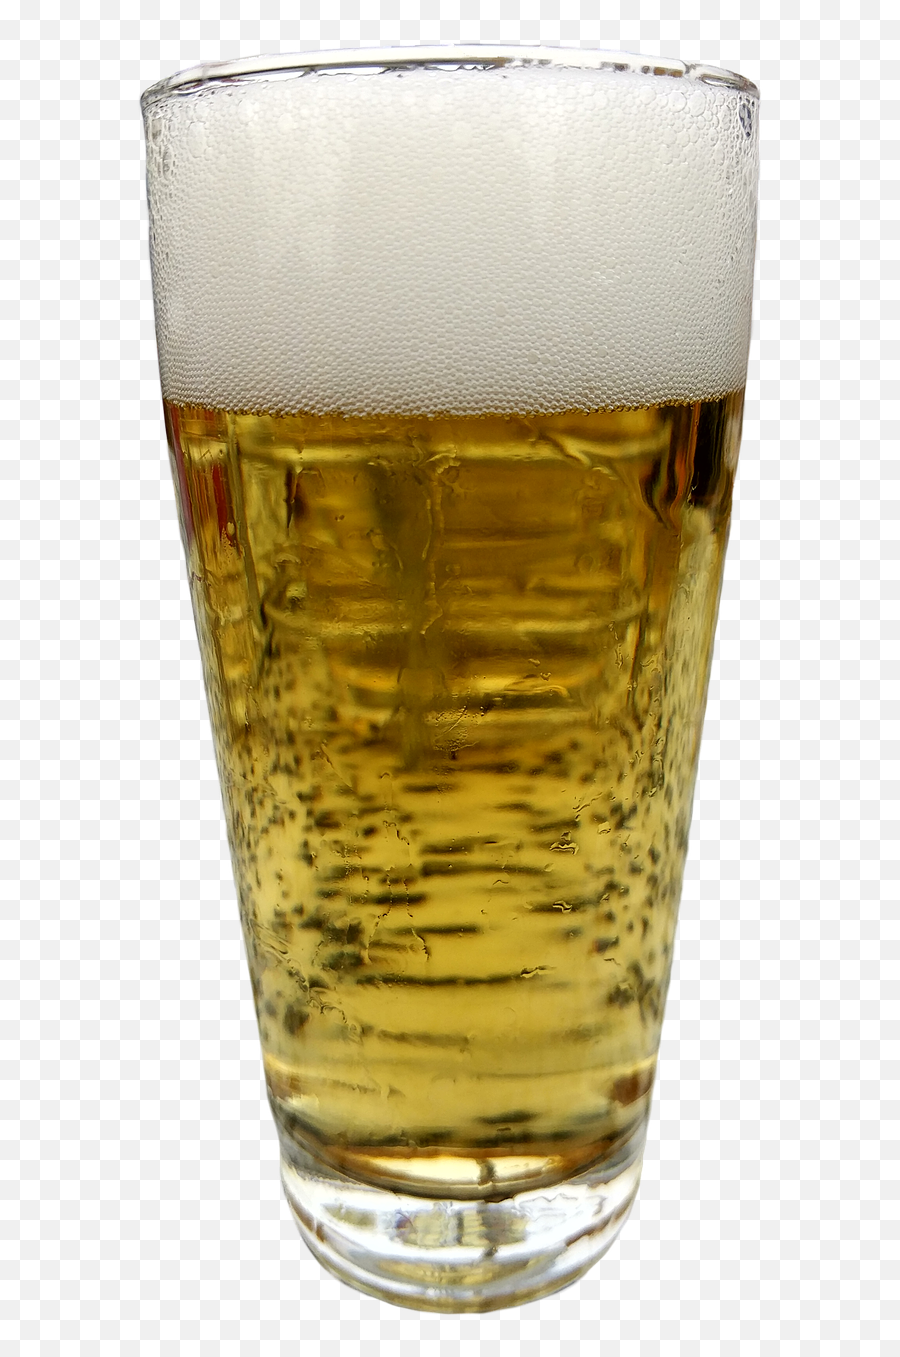 Download Free Photo Of Beer Glassisolatedbeerpilsfood - Beer Glassware Png,Beer Foam Png